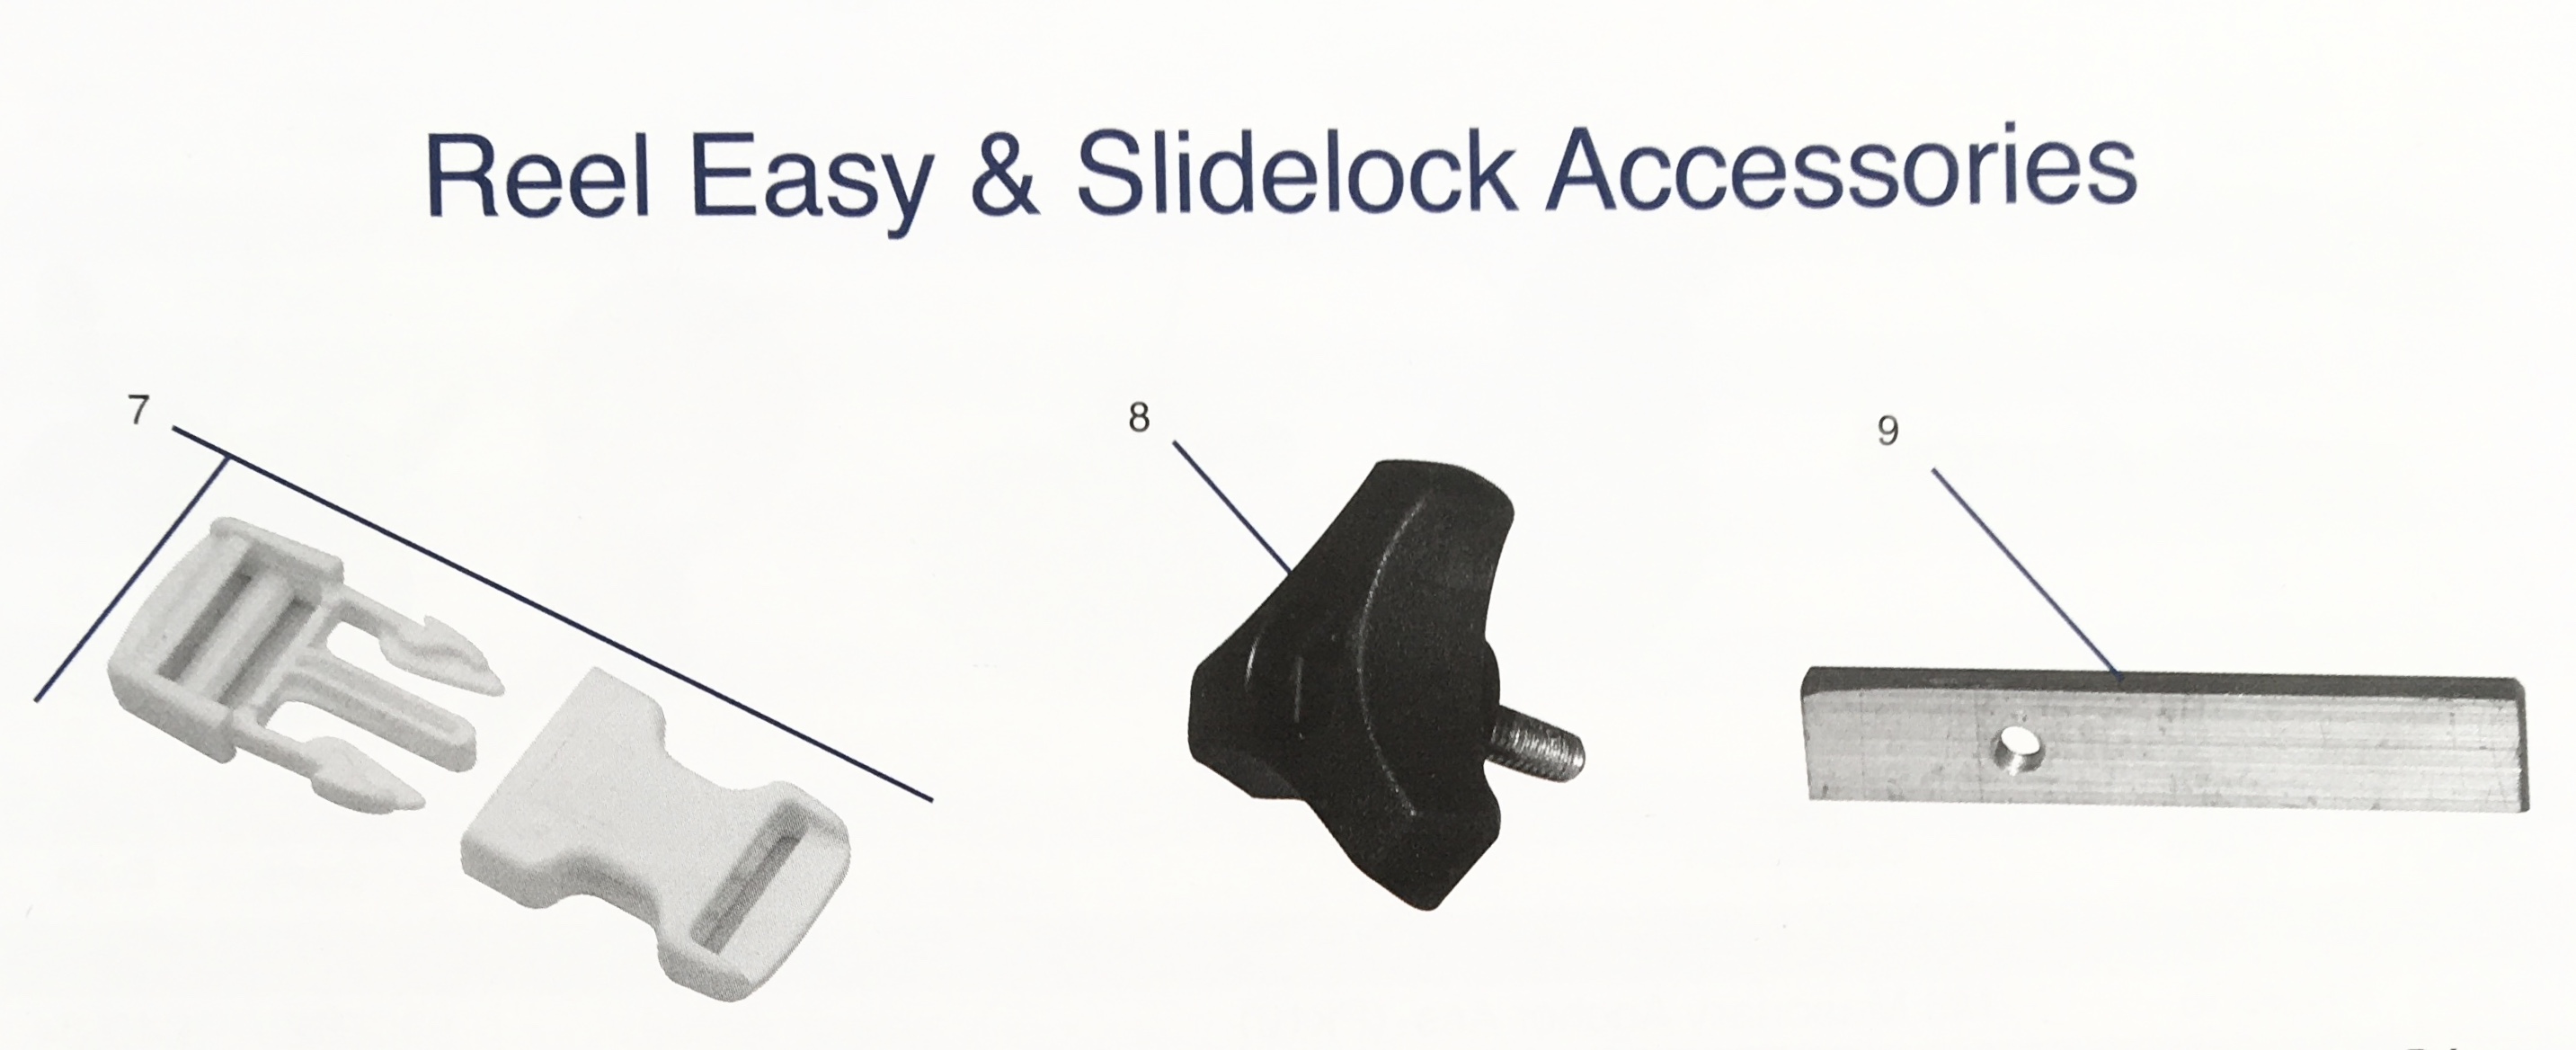 Reel Easy   Sidelock Accessories 2